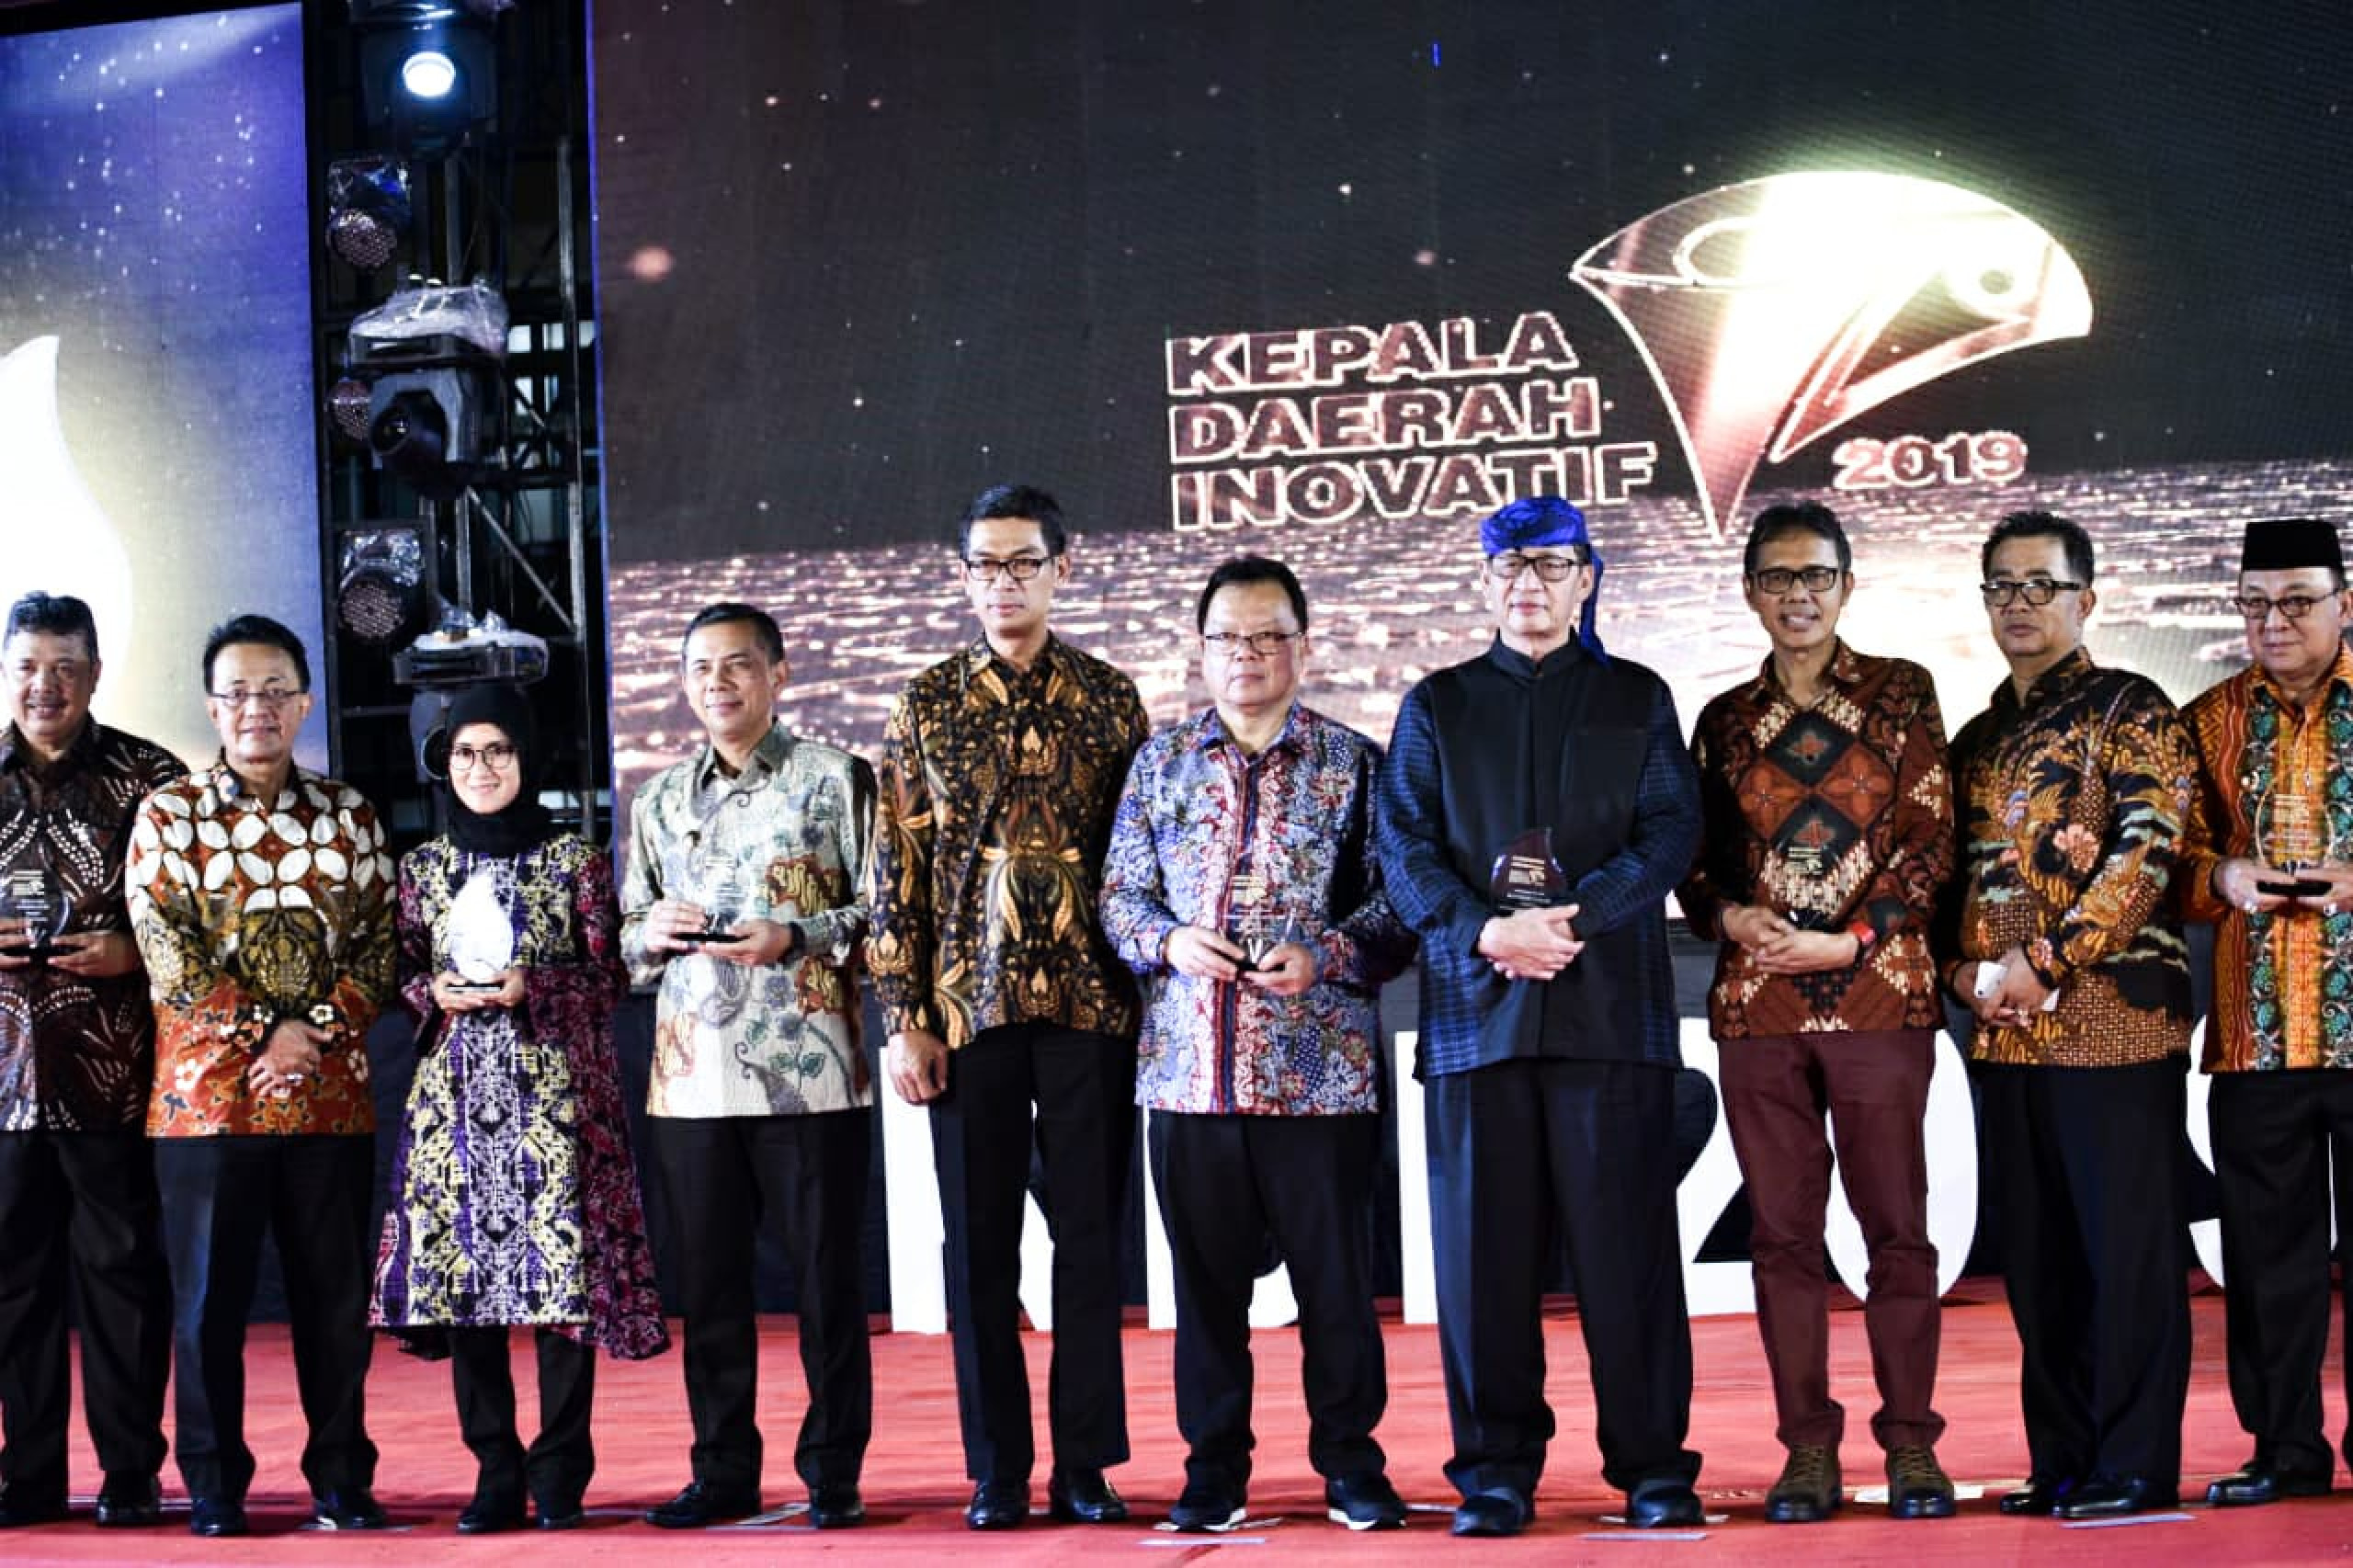 saberpungli jabar - Ridwan Kamil Terima Penghargaan Kepala Daerah Inovatif 2019 Berkat Program JQR